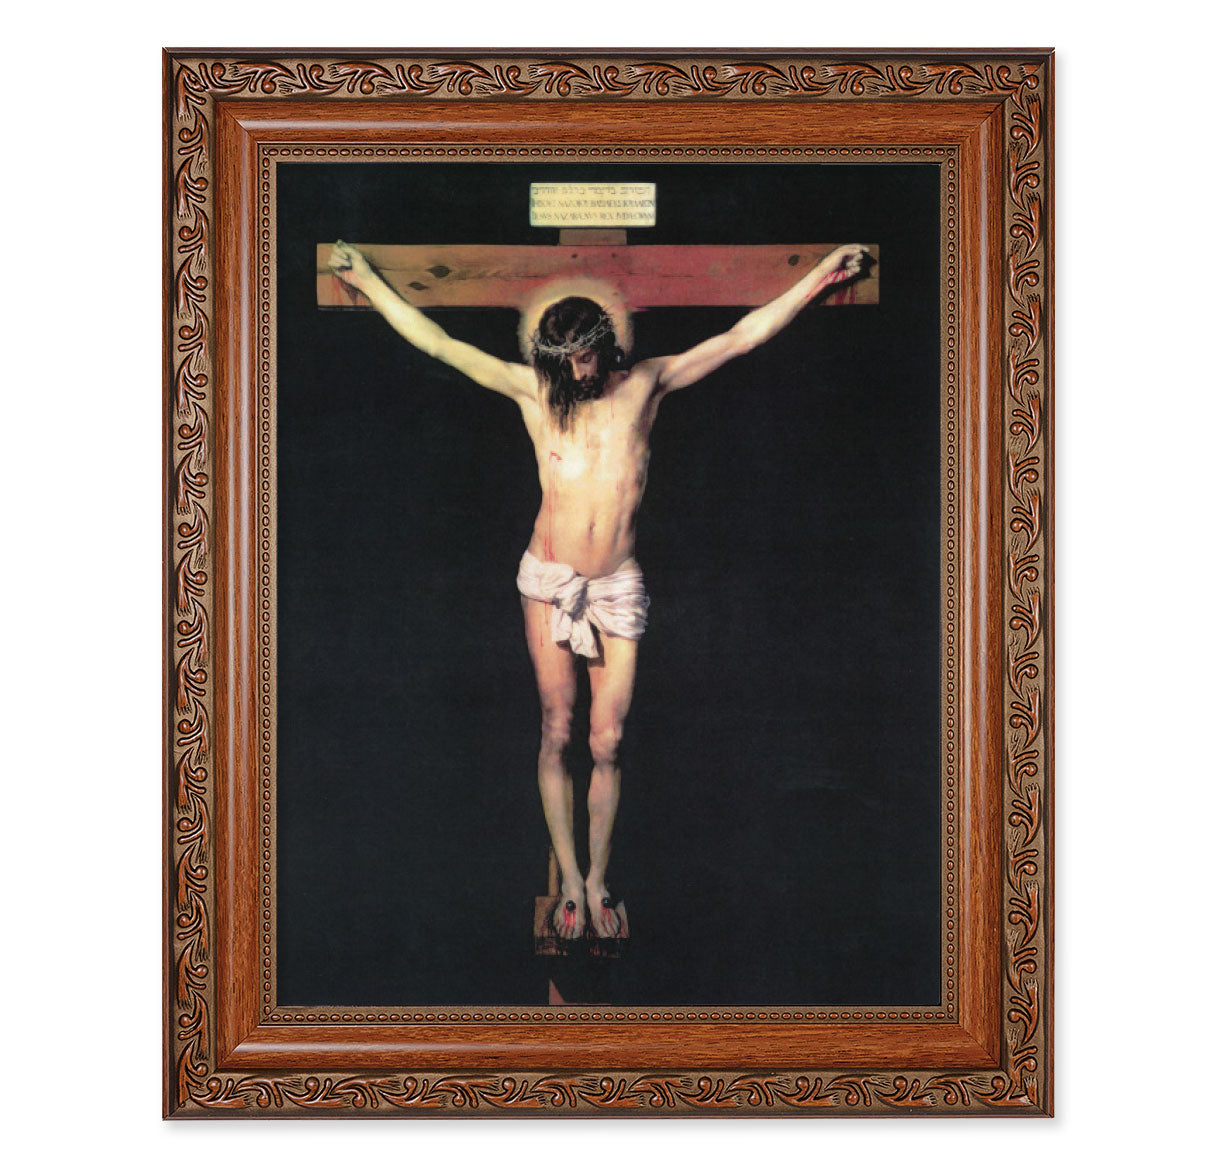 The Crucifixion Mahogany Finished Framed Art